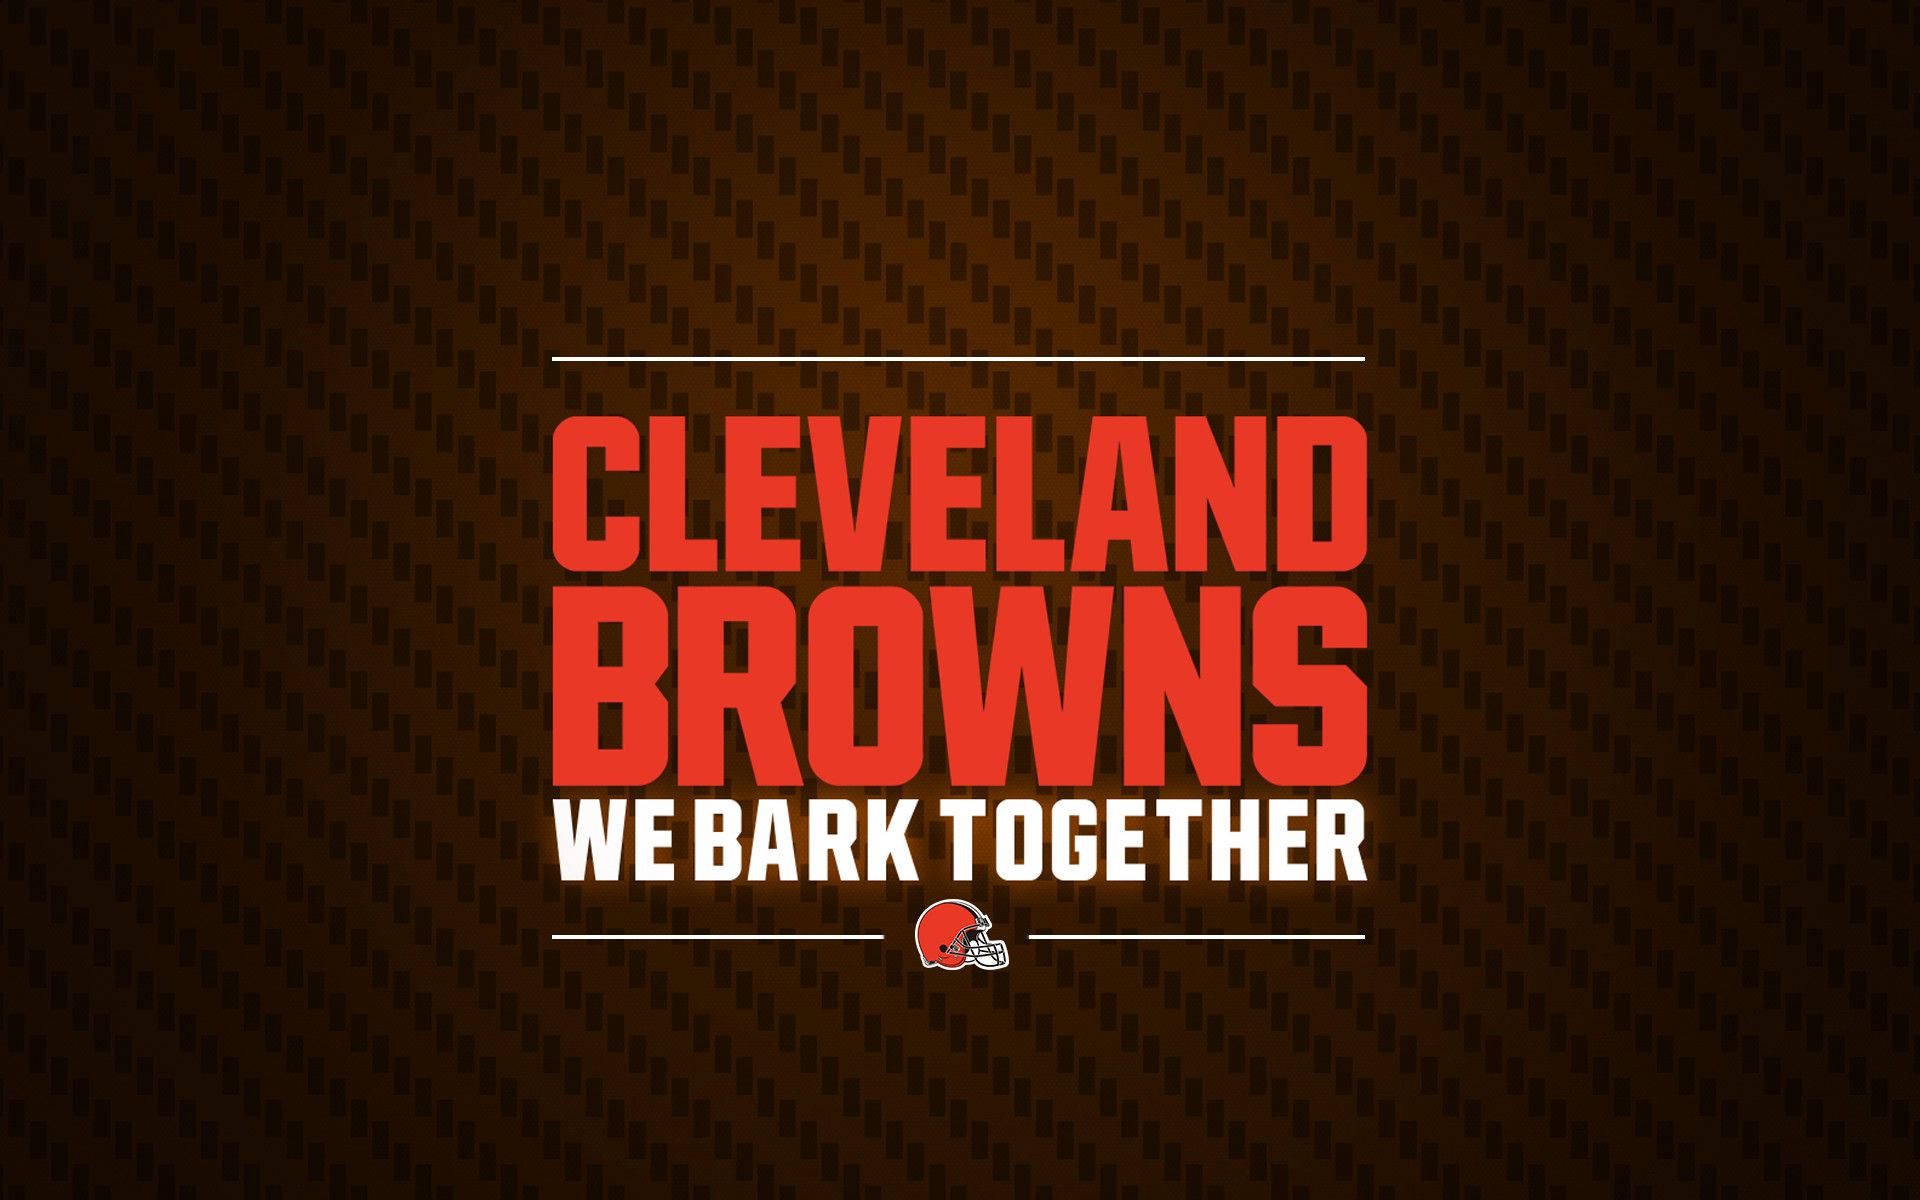 Cleveland Browns: We Bark Together